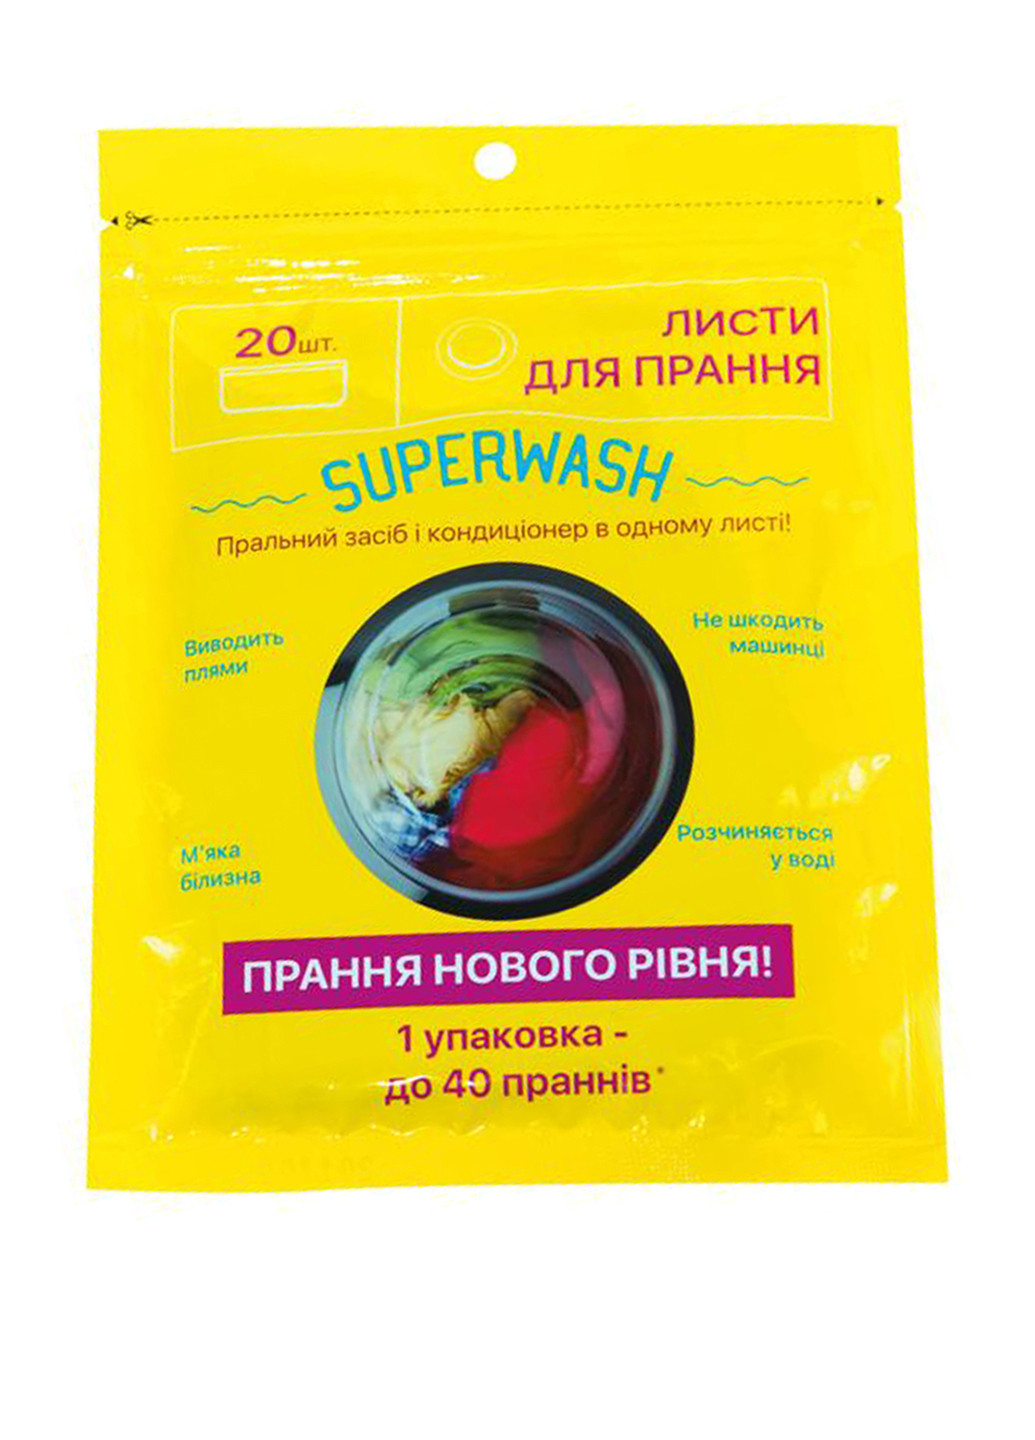 Засіб для прання Superwash (листи для прання) Mirta superwash (листы для стирки) (138295842)